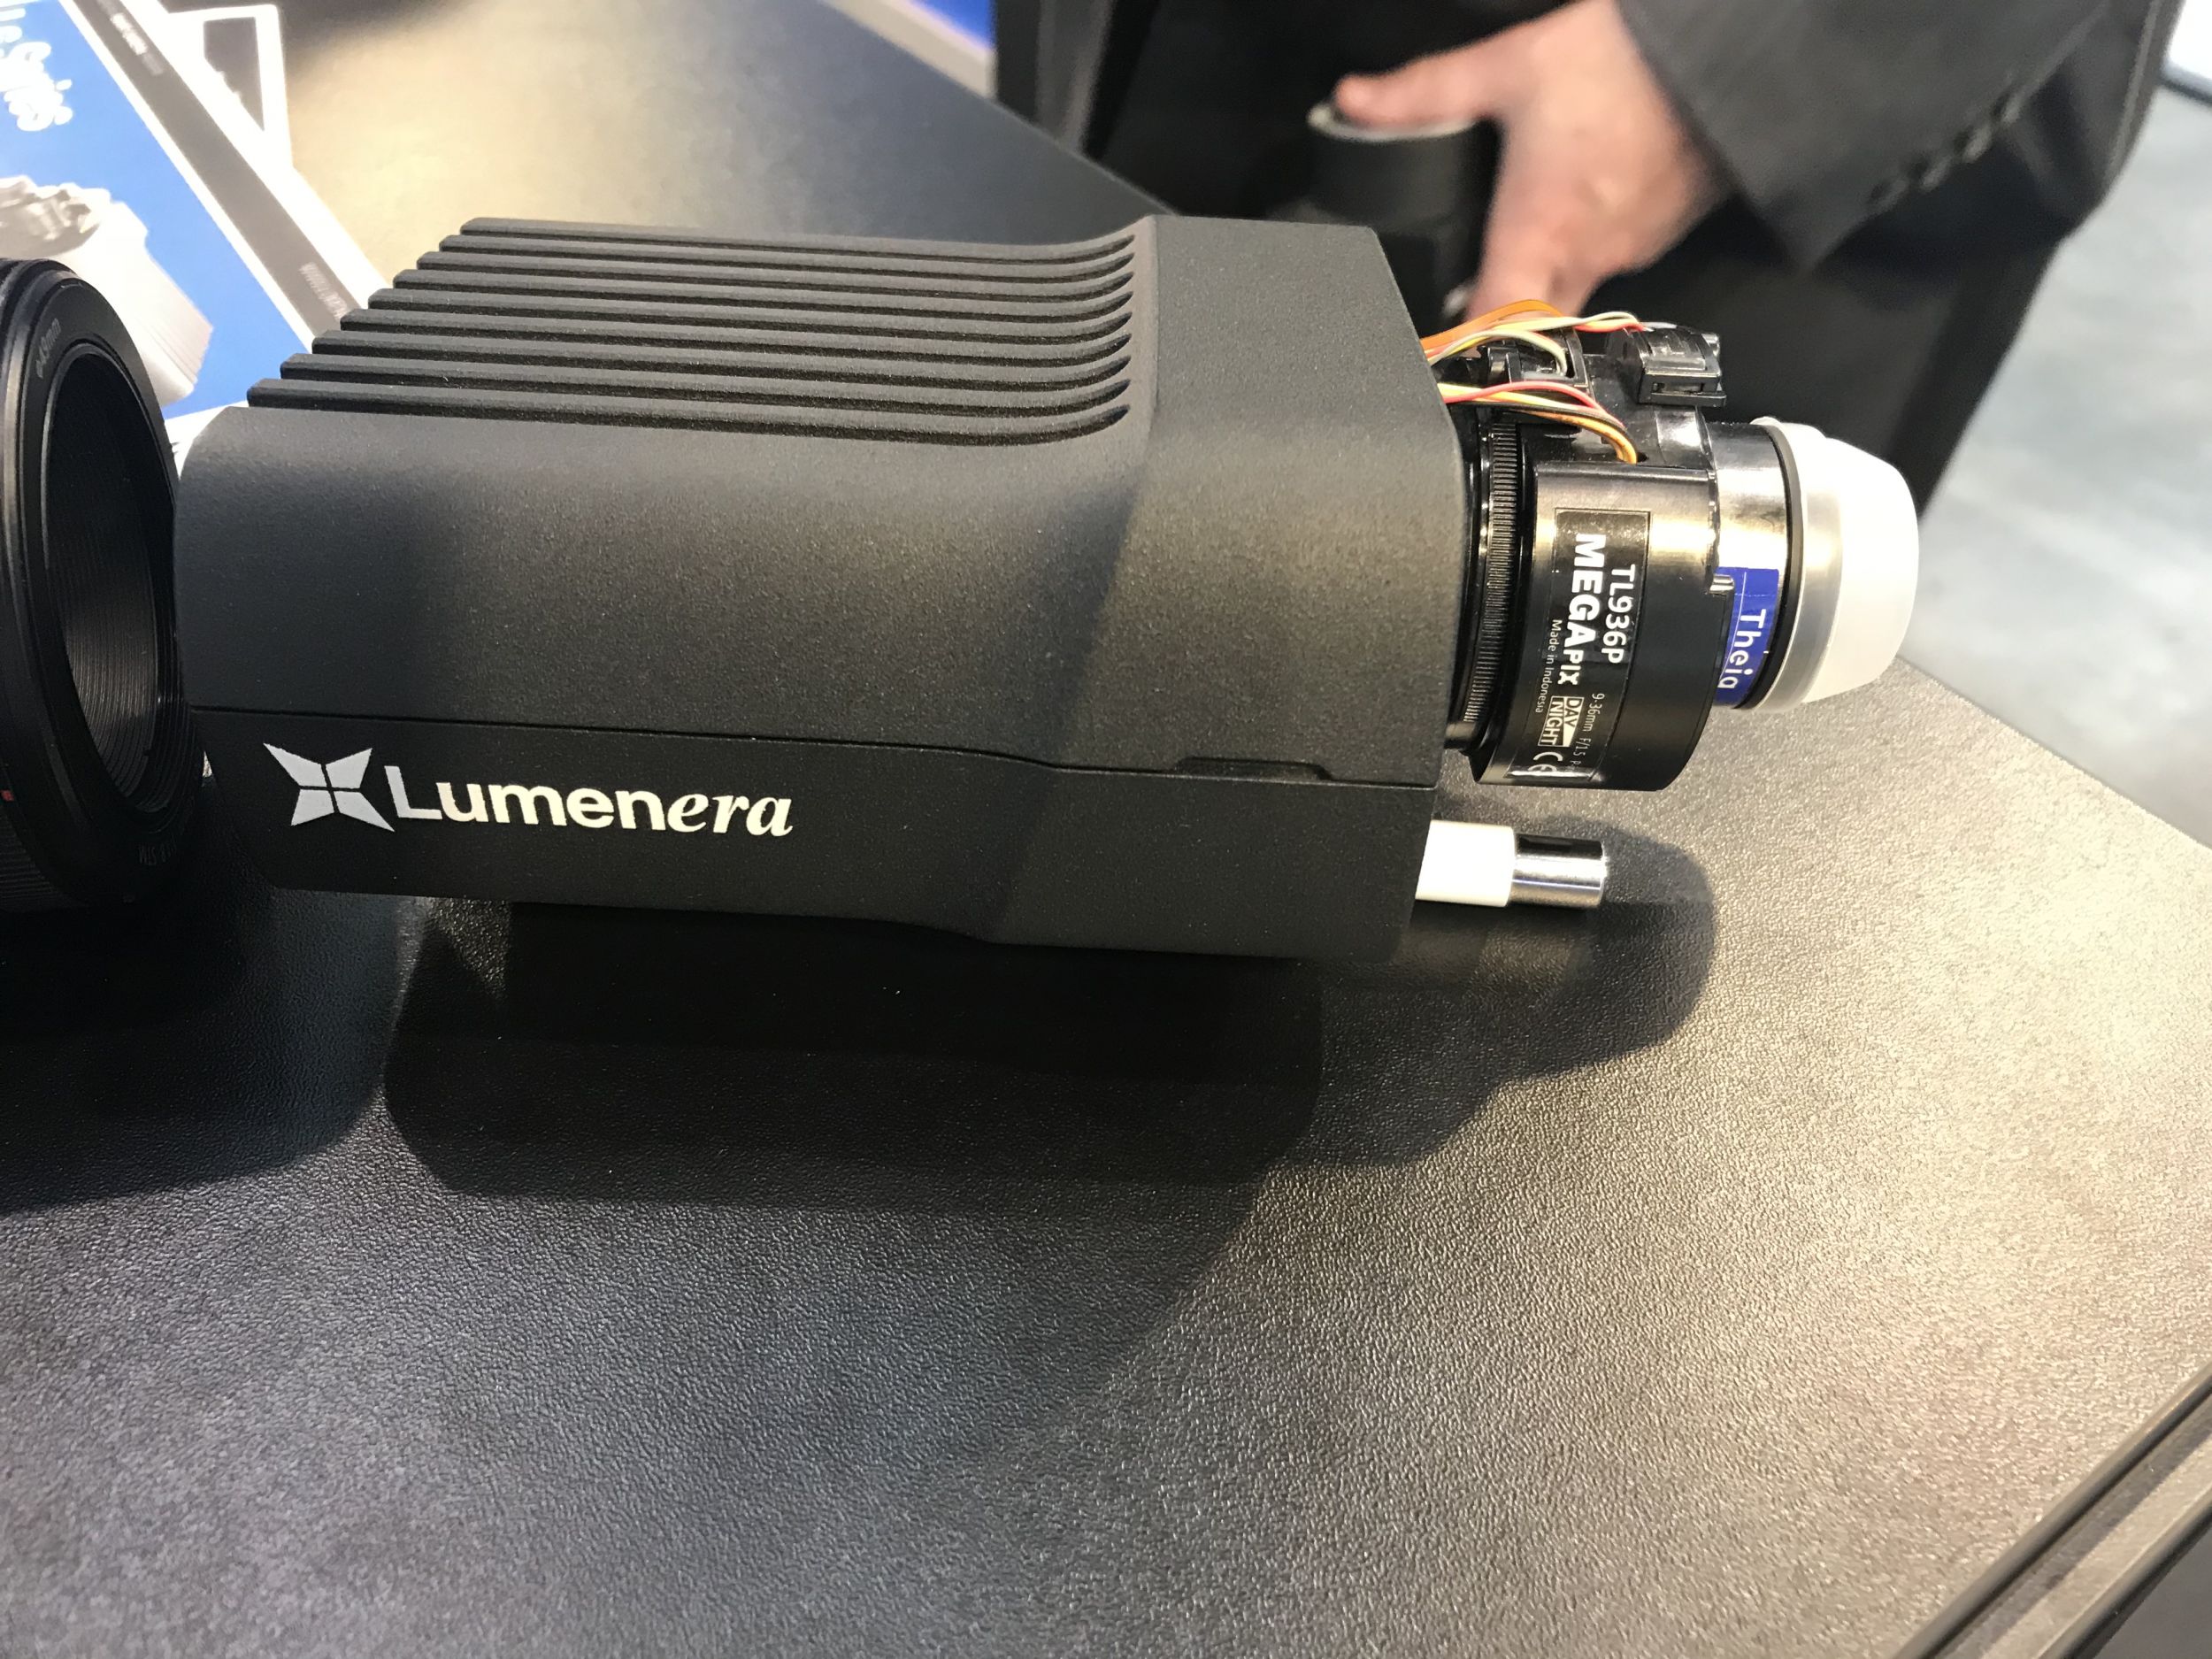 Die intelligente Kamera Ls von Lumenera wird mit verschiedenen Softwarepaketen für fünf verschiedene Branchen angeboten. (Bild: TeDo Verlag GmbH)